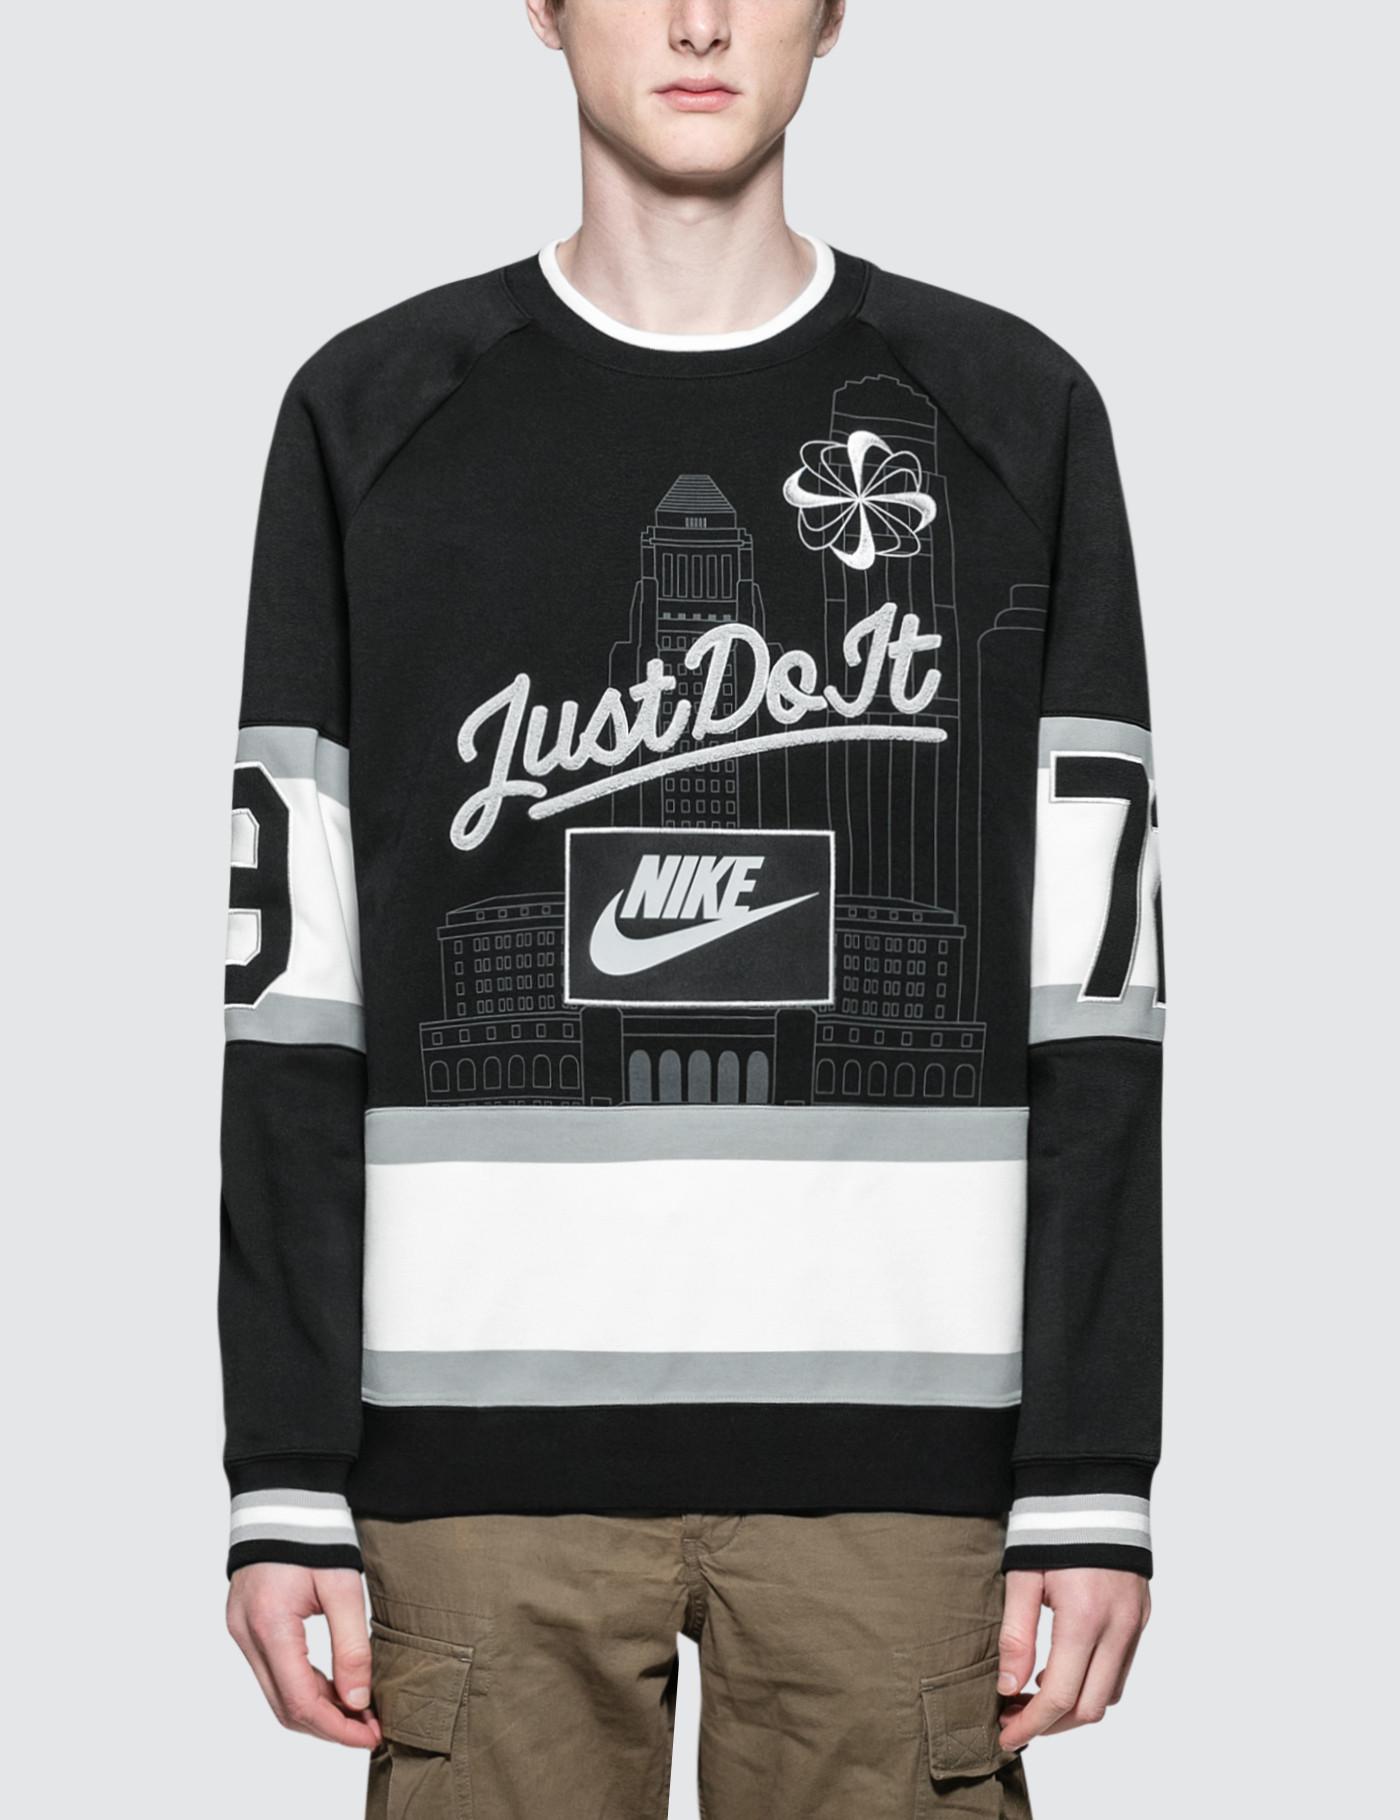 Nike Los Angeles Sweatshirt in Black for Men - Lyst